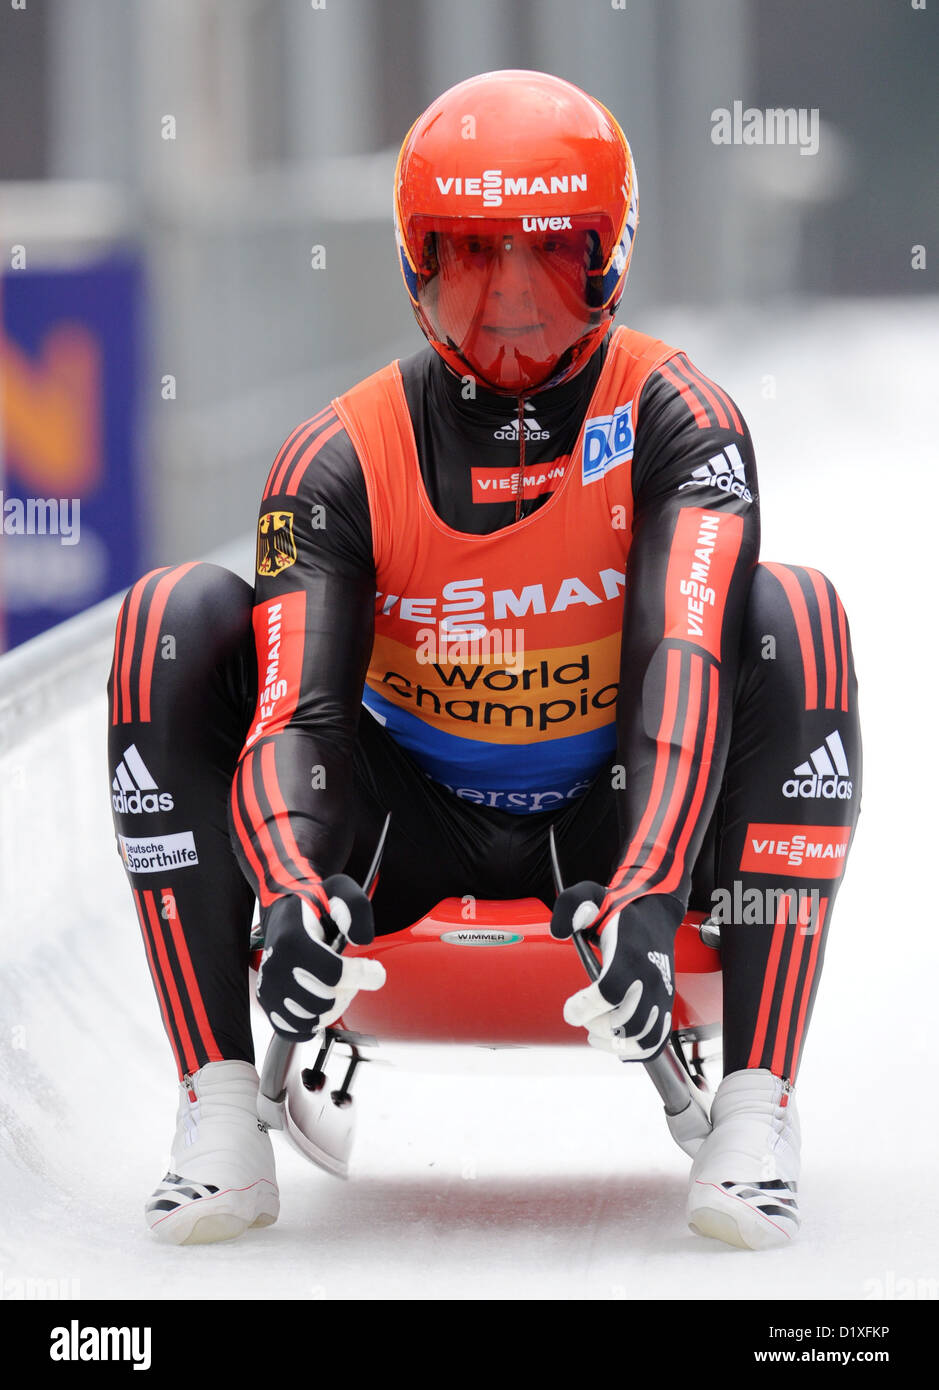 Deutscher Rennrodler Felix Loch in Aktion während der Rennrodel-Weltmeisterschaft in Königssee, Deutschland, 6. Januar 2013. Loch belegte den vierten Platz. Foto: Tobias Hase Stockfoto